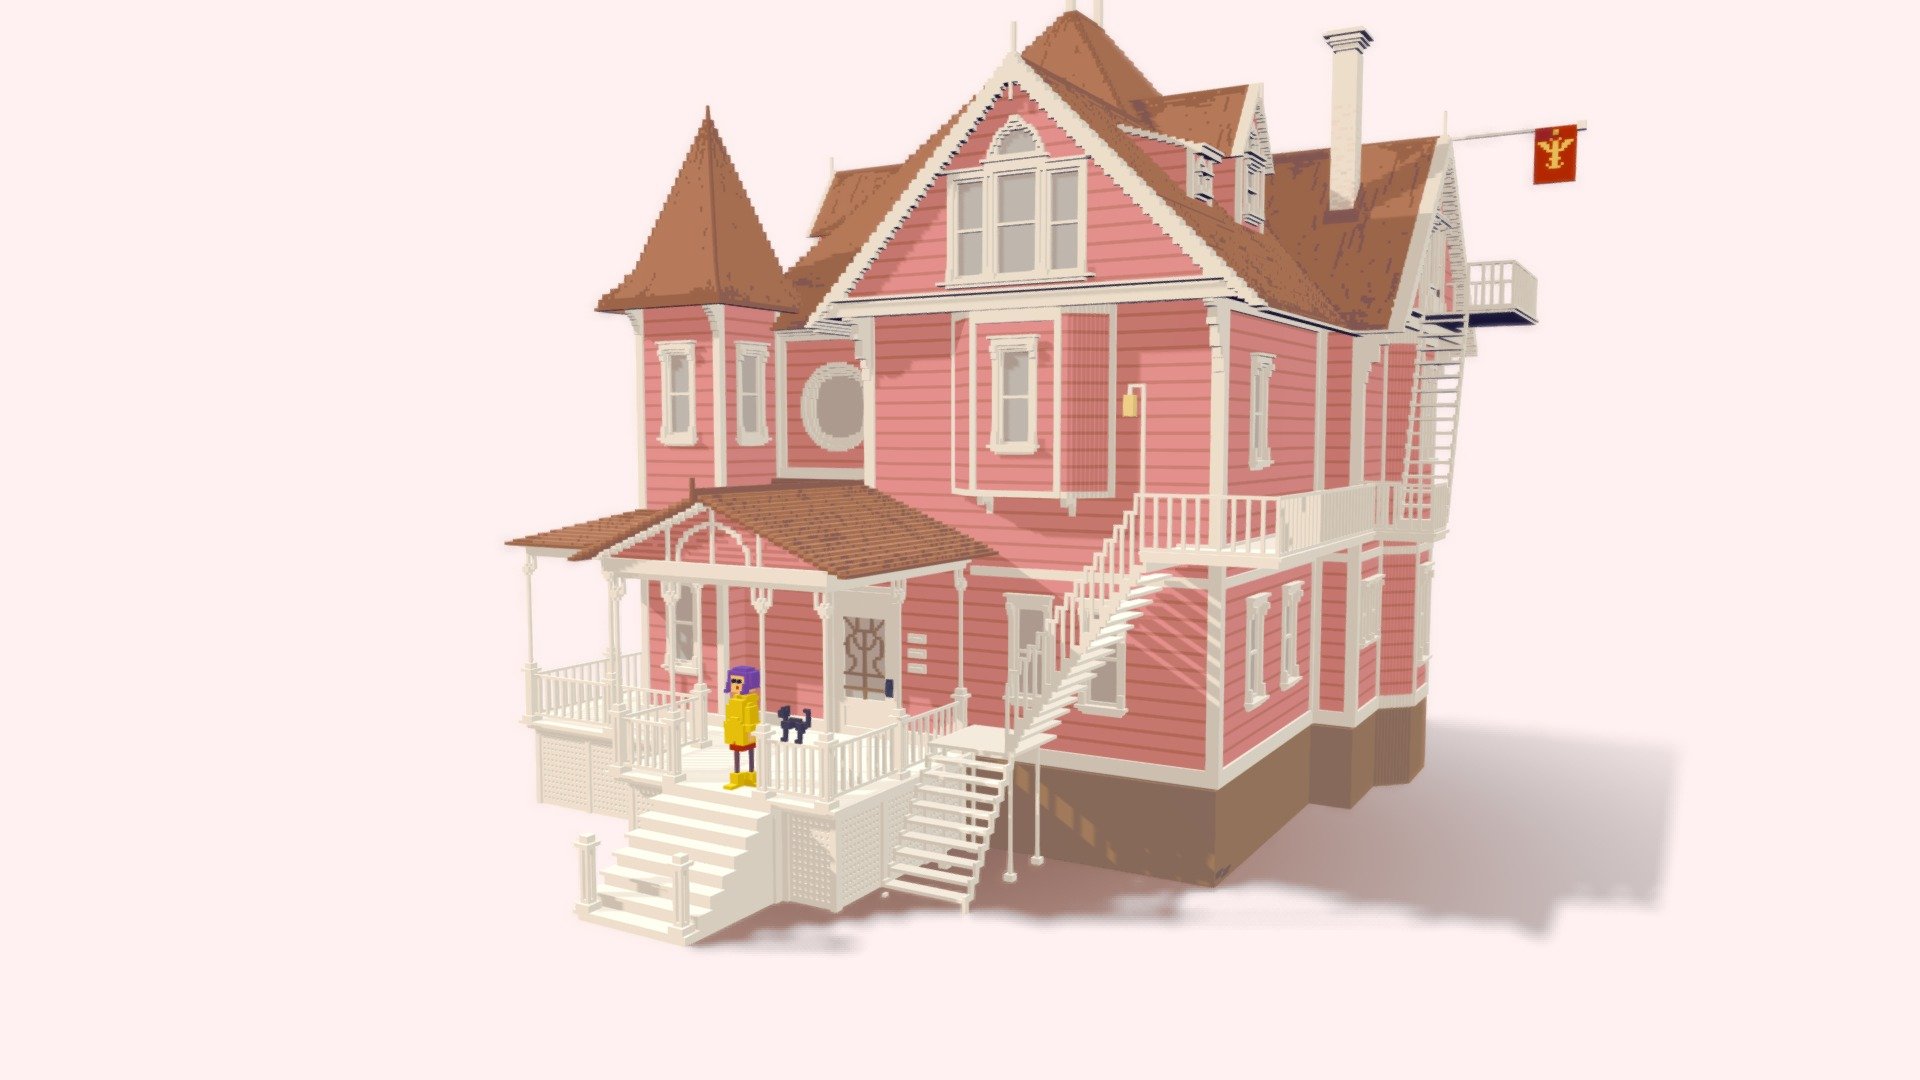 Coraline_house - 3D model by m.alchimowicz 3d model